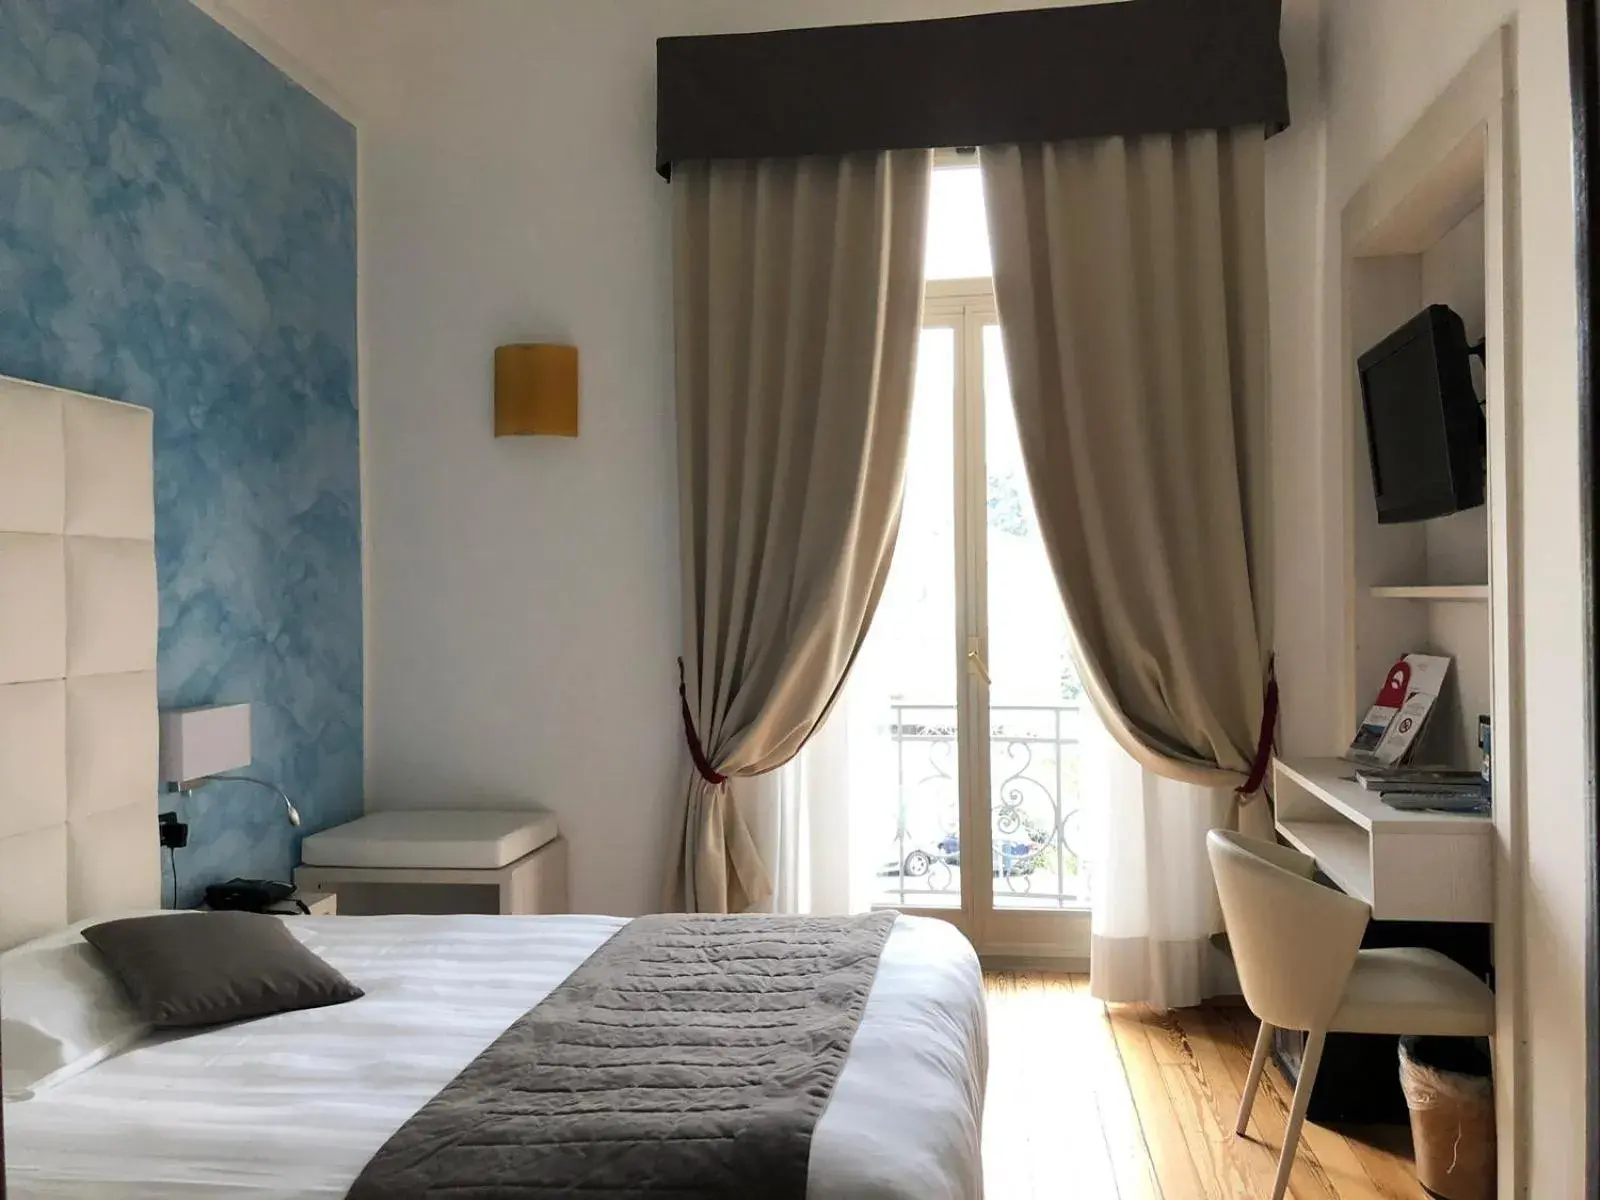 Bed in Hotel Parigi & Spa